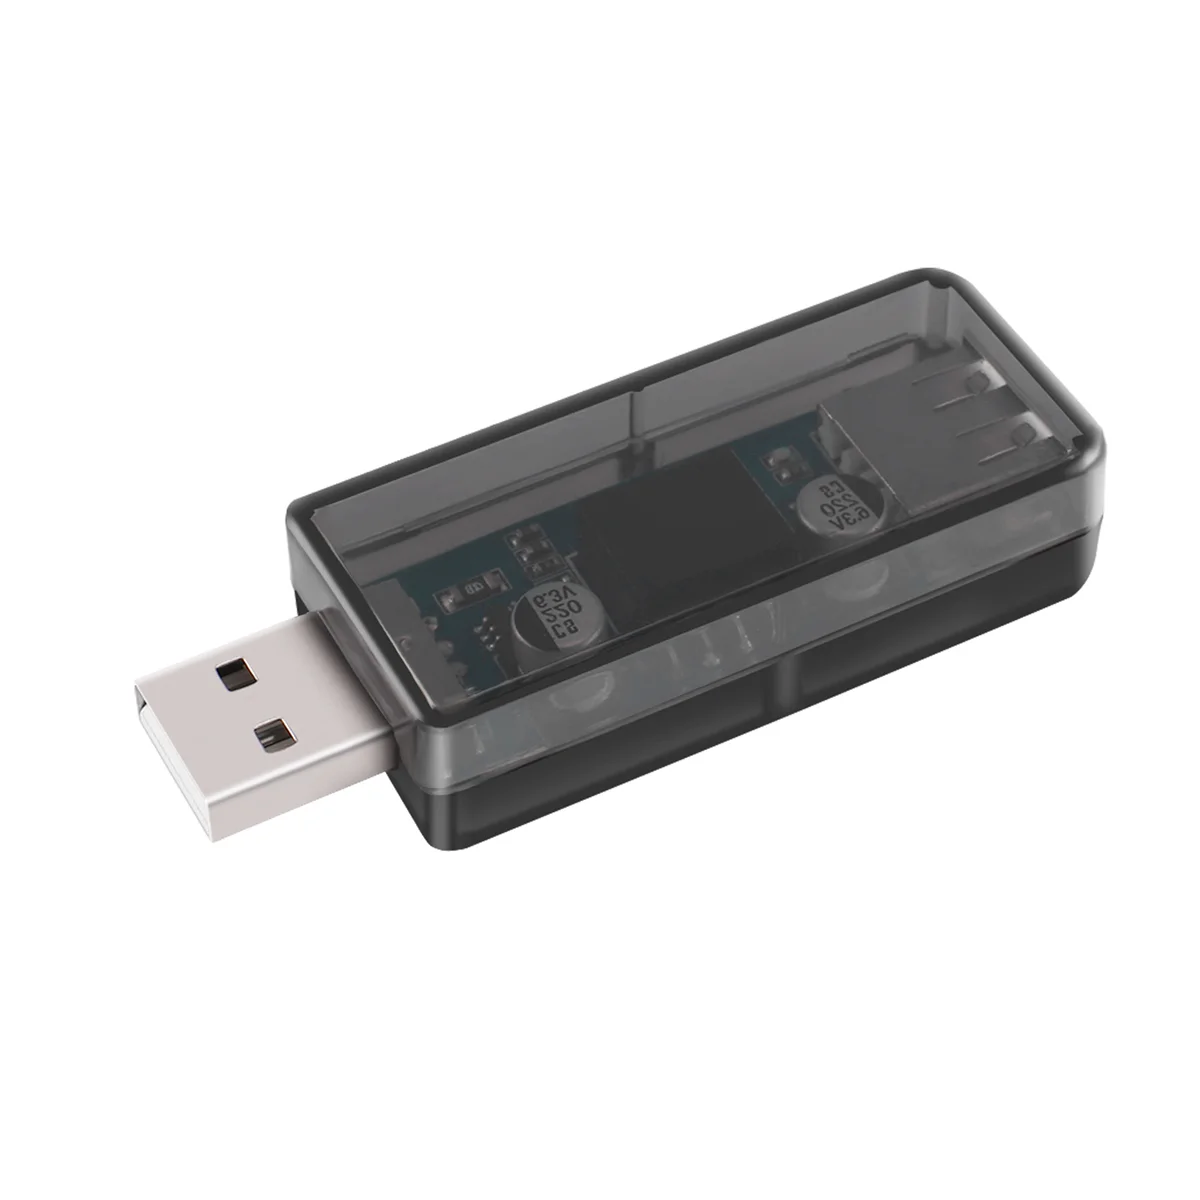 Isolador USB para USB, Isoladores Digitais de Grau Industrial com Shell, Velocidade de 12Mbps, ADUM4160, ADUM316